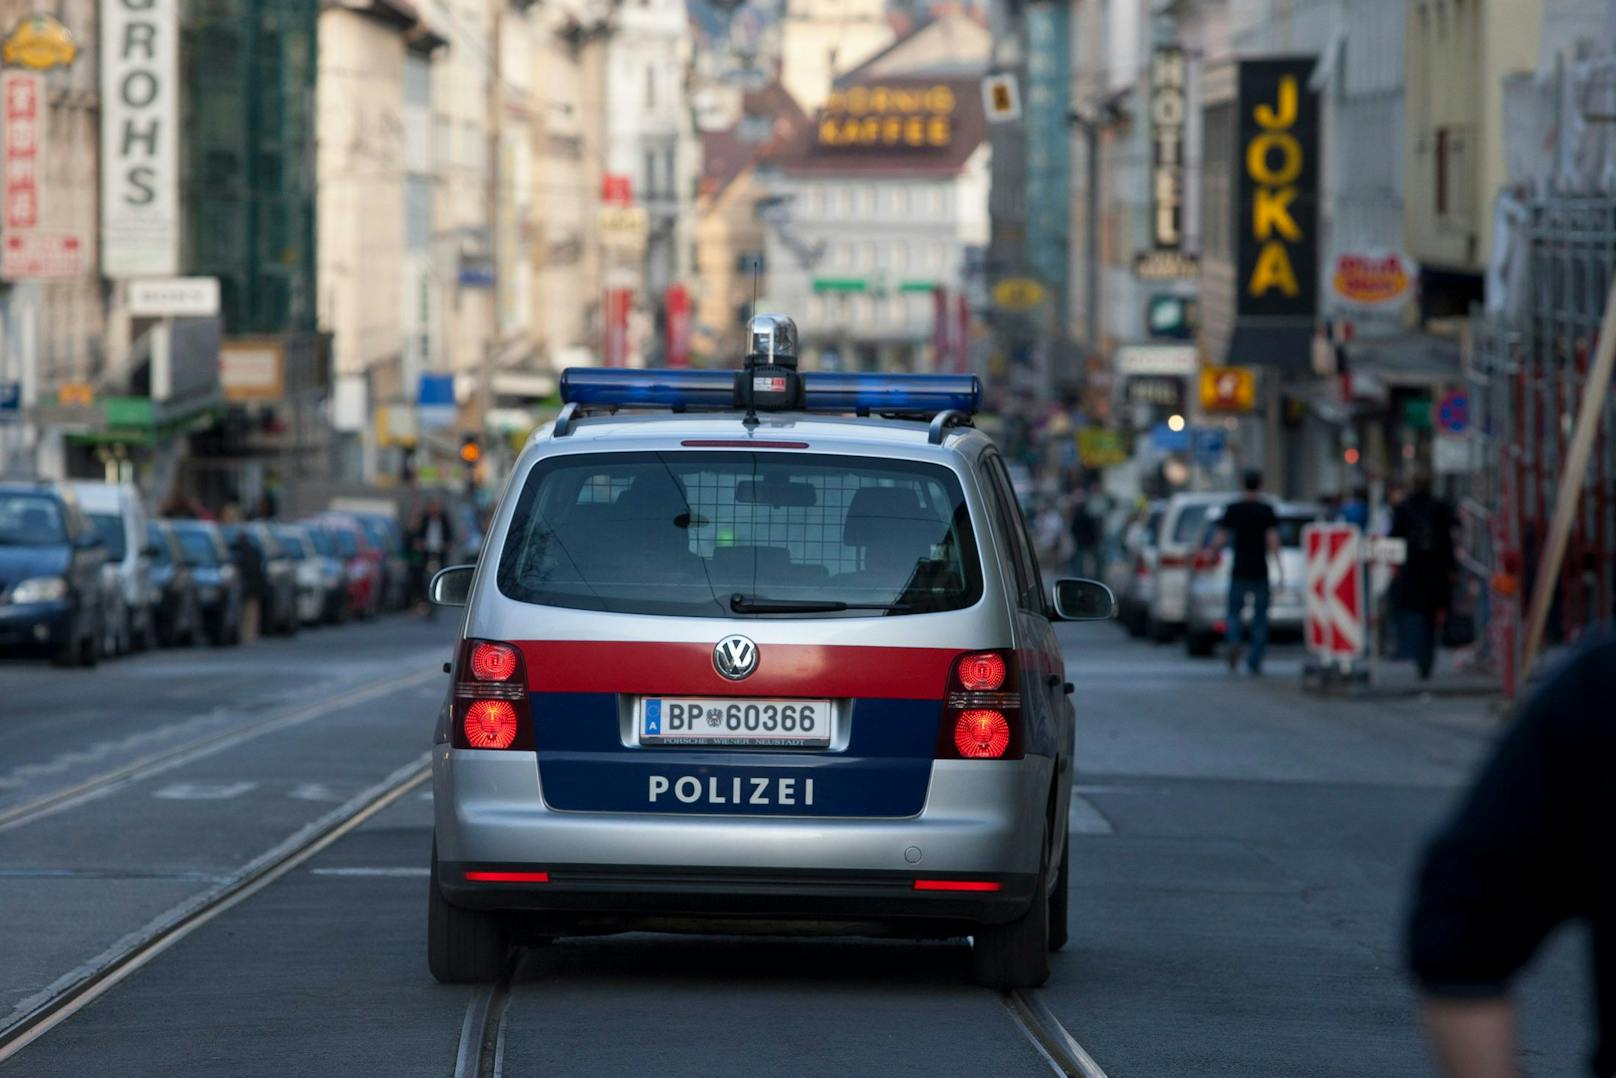 Polizeiauto im Einsatz in Graz. (Symbolbild)